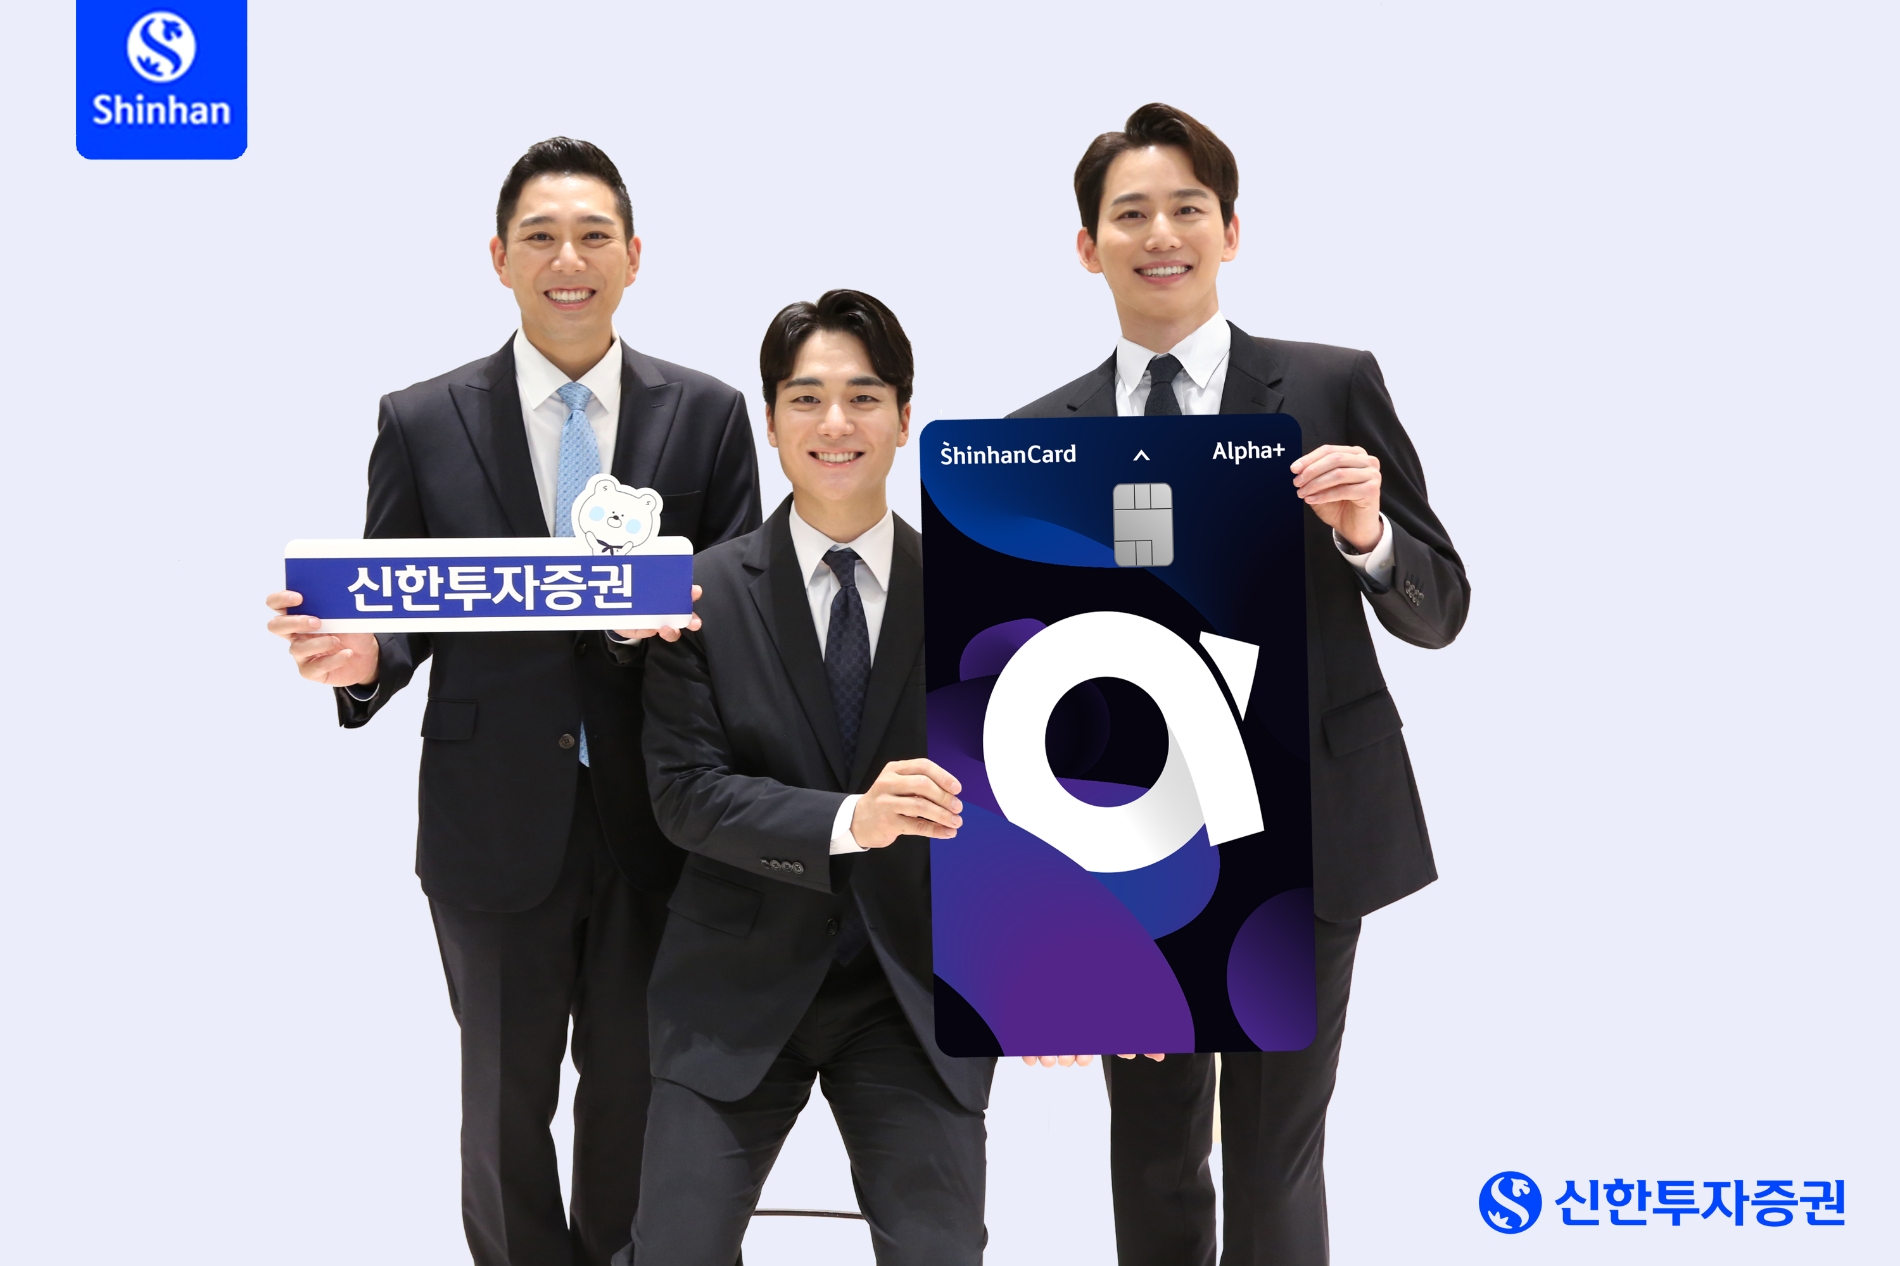 신한투자증권(대표 김상태)은 주식투자 전용 카드인 ‘알파 플러스 카드’를 출시했다고 8일 밝혔다. /사진 = 신한투자증권